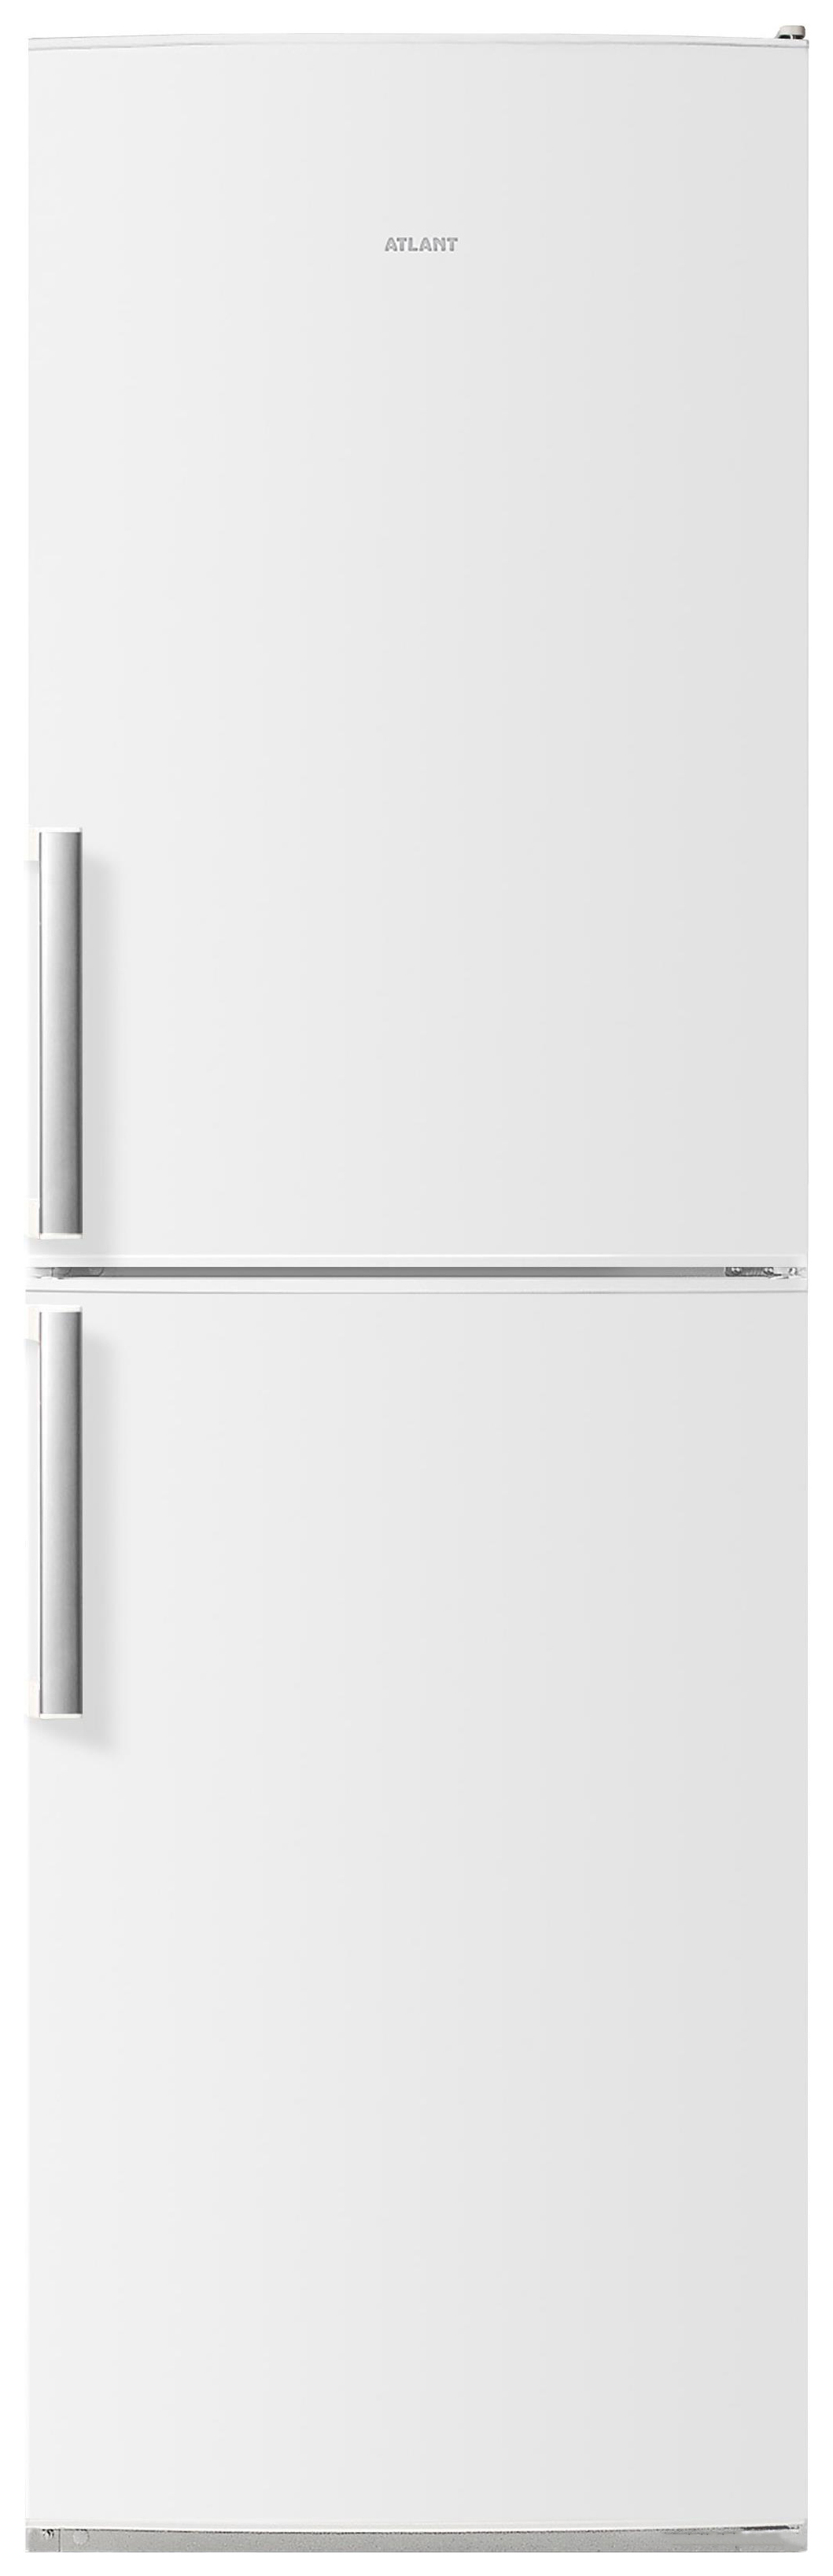 Холодильник ATLANT ХМ 4423-000 N белый холодильник atlant хм 4423 080 n